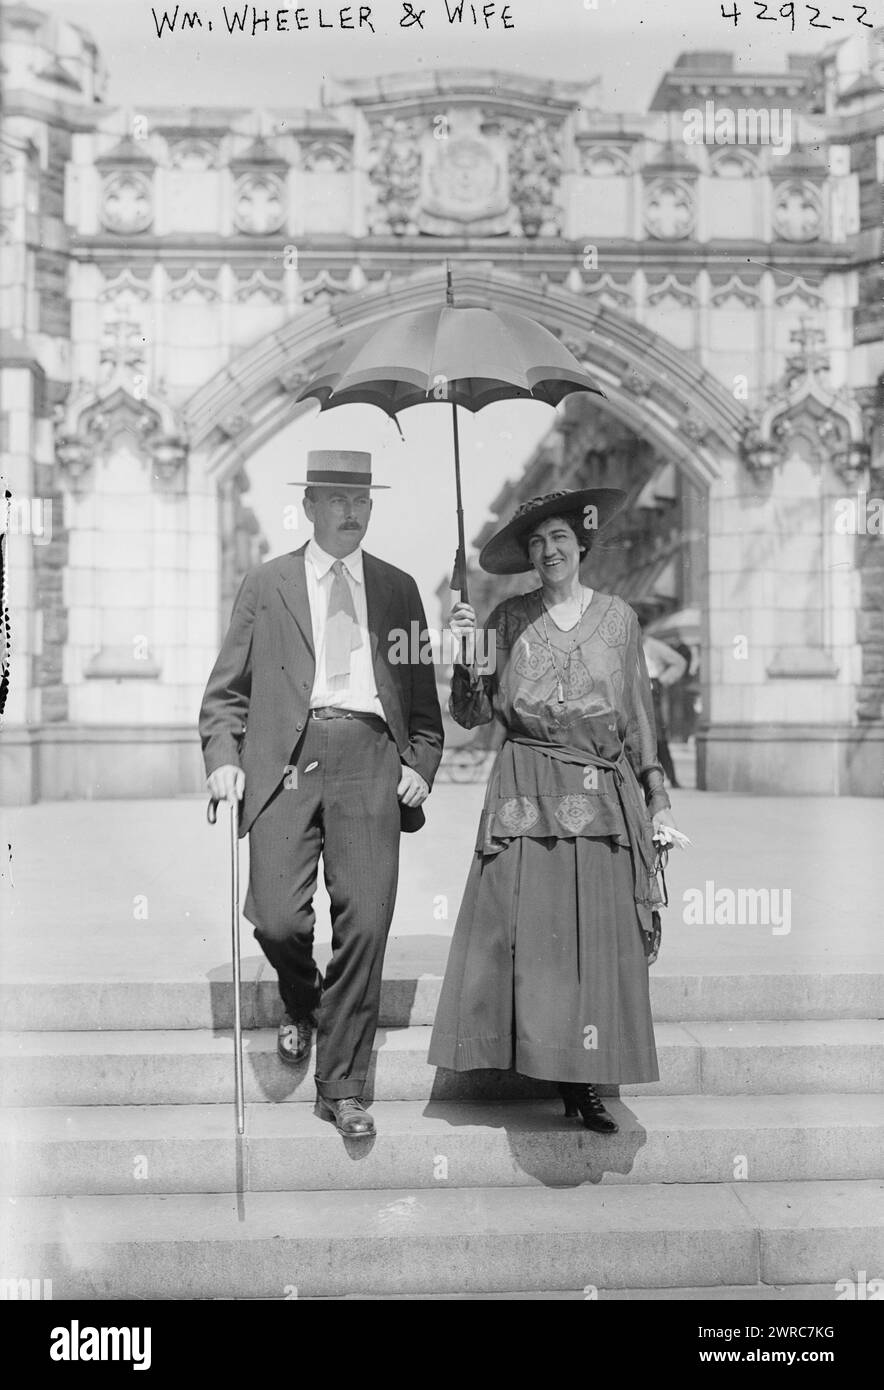 Wm. Wheeler & Wife, Foto zeigt den Tenor-Opernsänger William Wheeler (* 1967) und seine Frau Sopransängerin Elizabeth Wheeler (1875–1971), die populäre Künstler waren, die am City College of New York vorbei spazierten. 1915 und ca. 1920, Glasnegative, 1 negativ: Glas Stockfoto